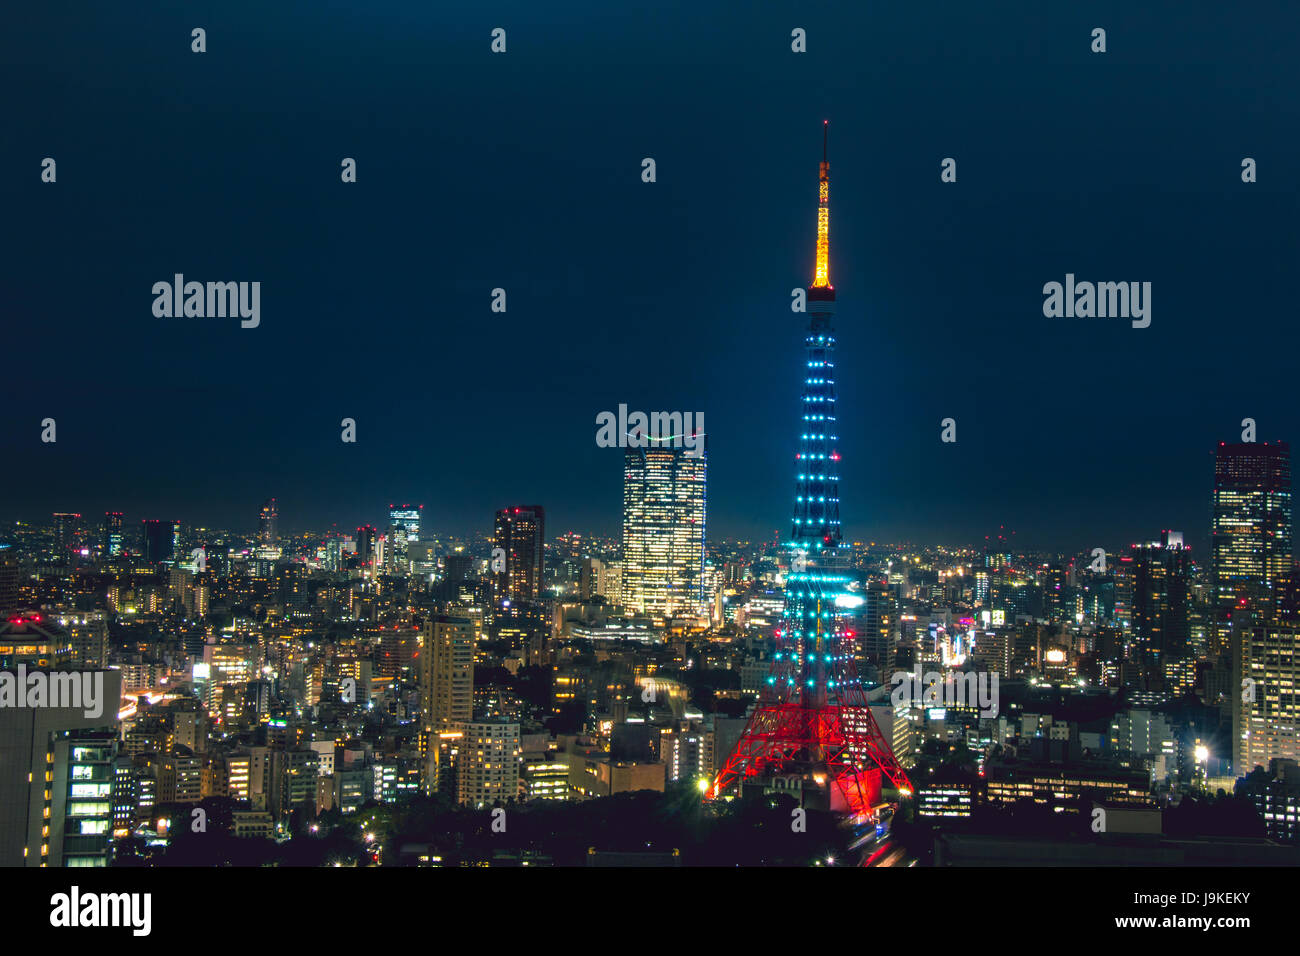 Tokyo Tower: Thưởng thức Tokyo Tower, tòa tháp cao nhất Đông Nam Á và điểm đến của du khách từ khắp nơi trên thế giới. Xem những bức ảnh đặc sắc và lấy cảm hứng cho chuyến dã ngoại kế tiếp của bạn đến thủ đô Tokyo, Nhật Bản.